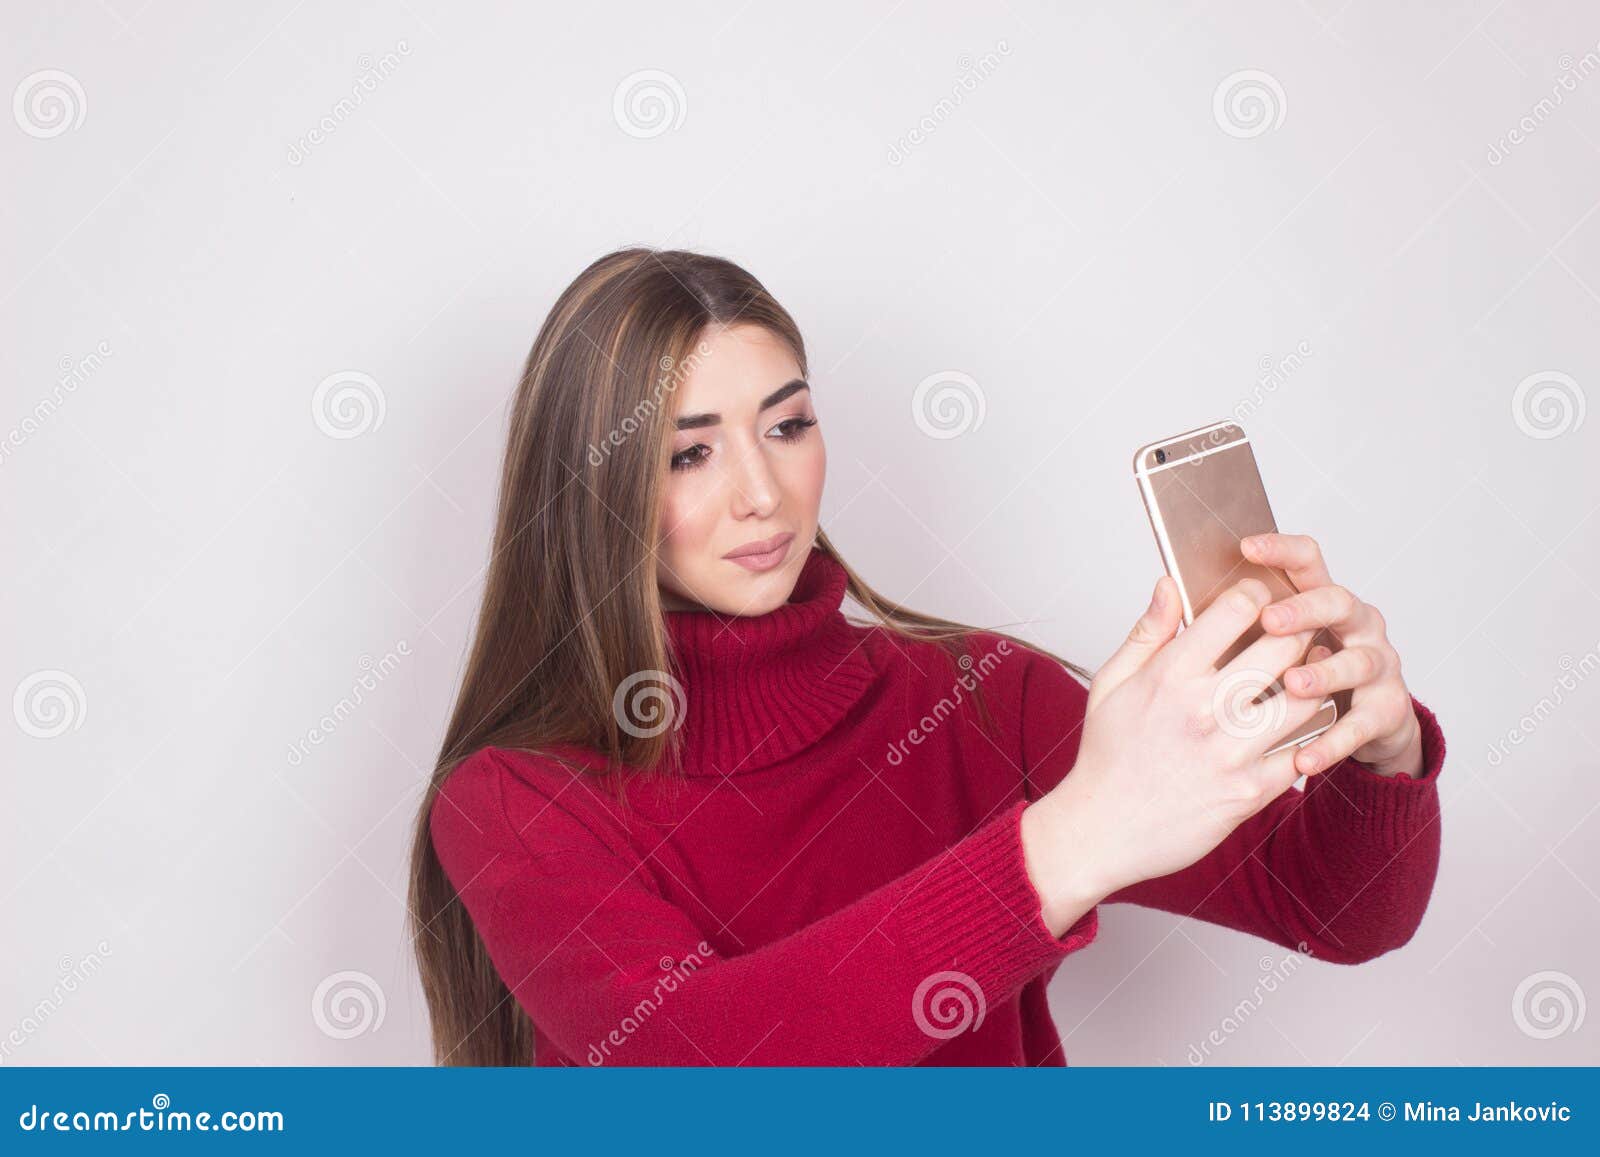 Teen girl selfie shot